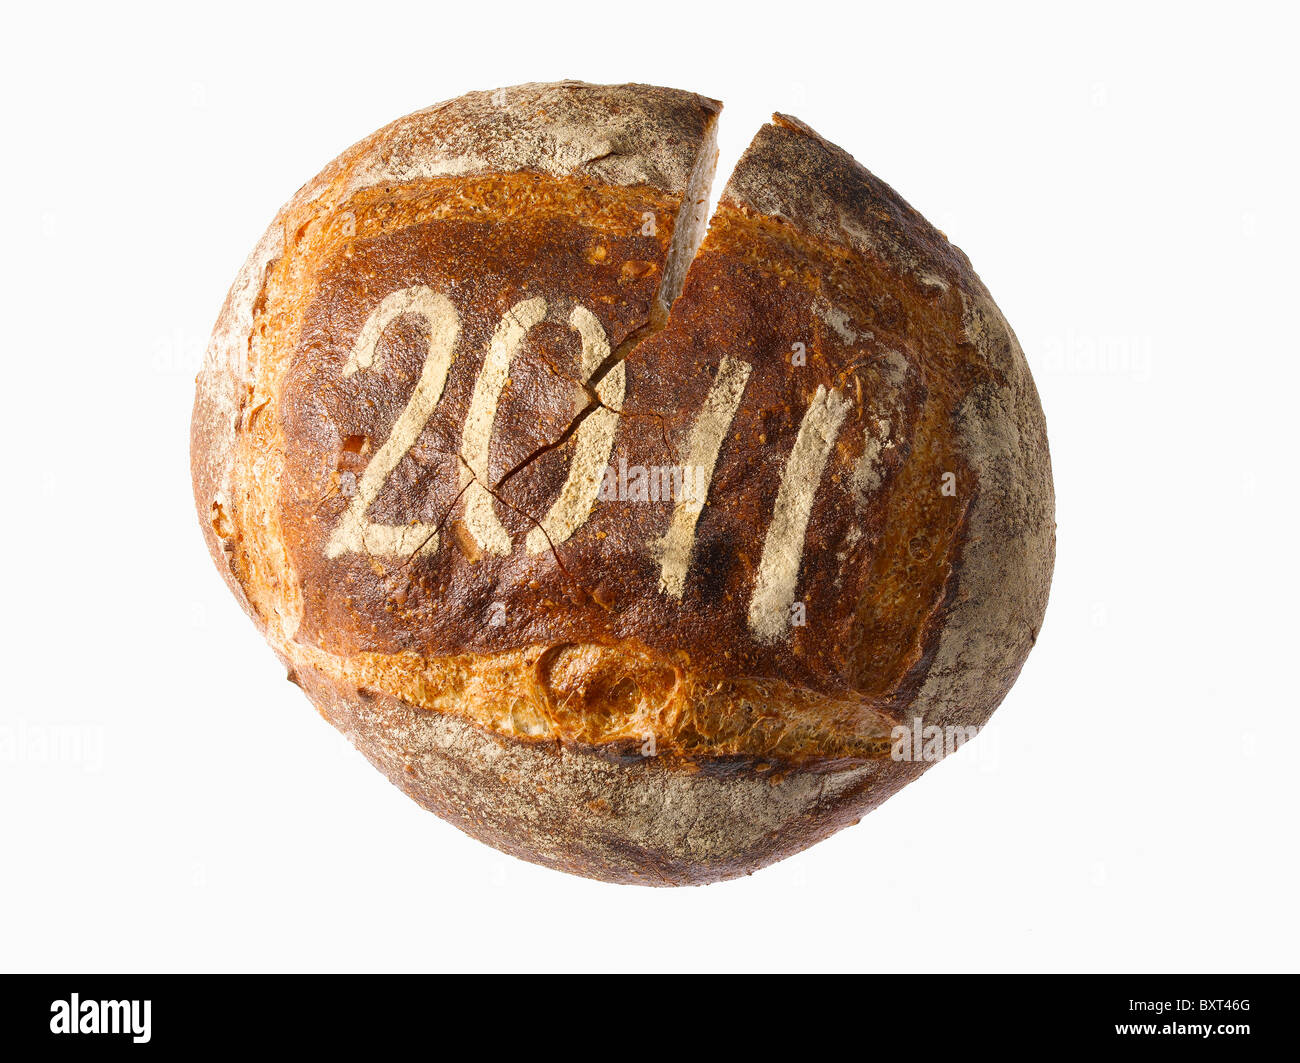 Miche de pain ronde enduit de année date Banque D'Images